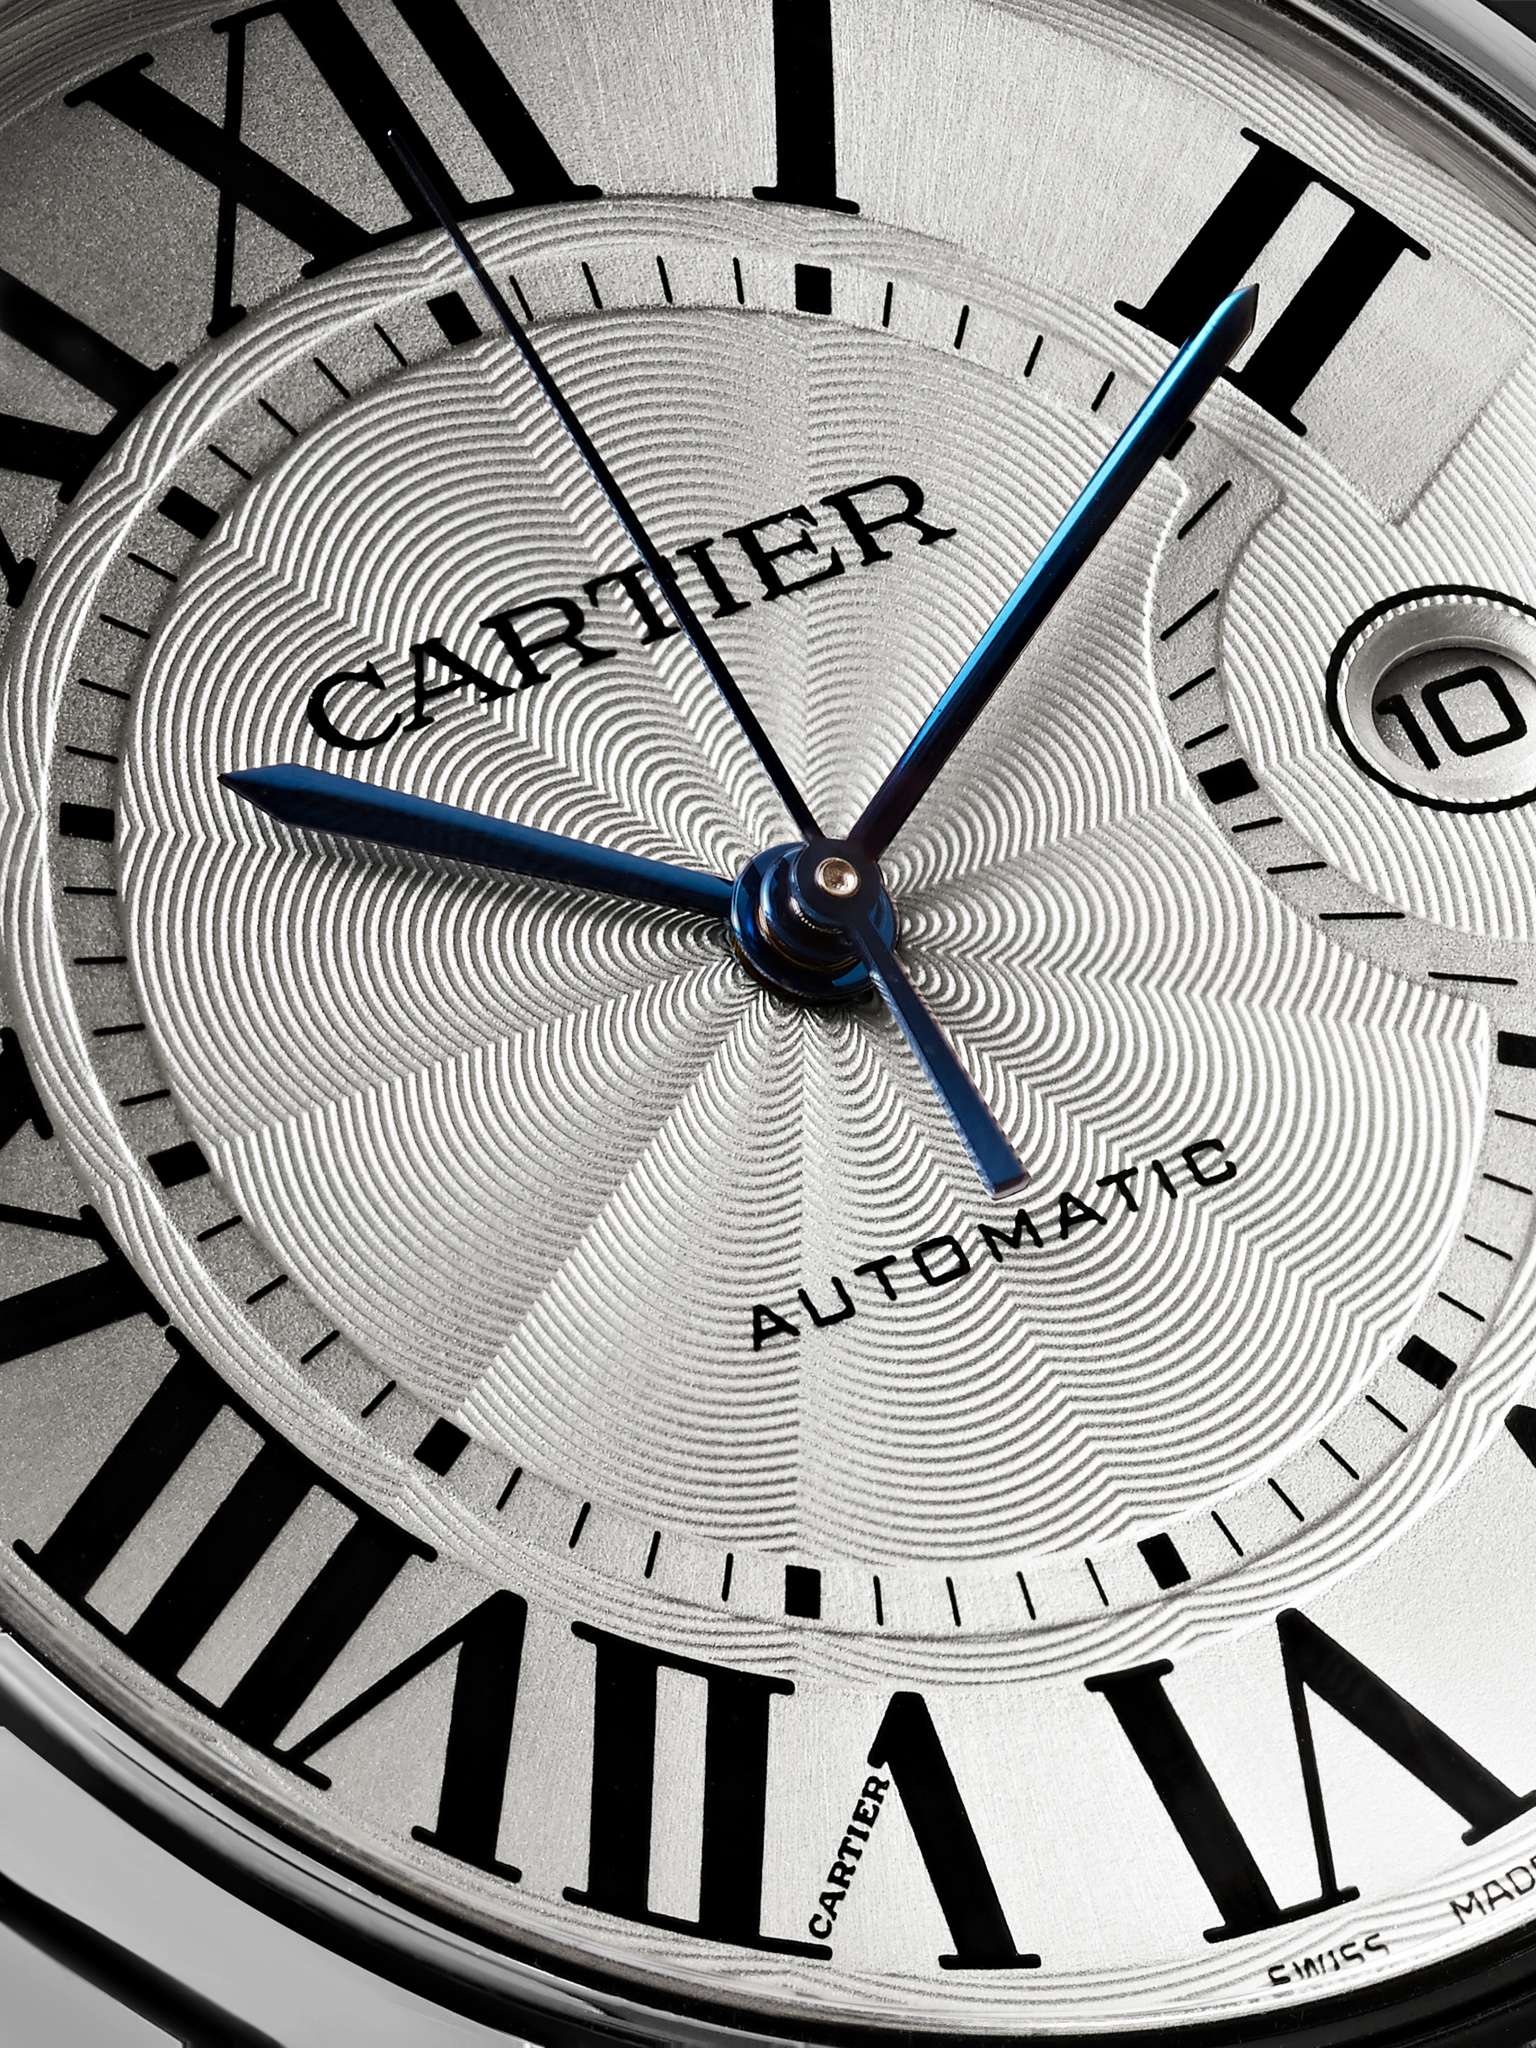 Ballon Bleu de Cartier Automatic 42mm Stainless Steel Watch, Ref. No. CRW69012Z4 - 6